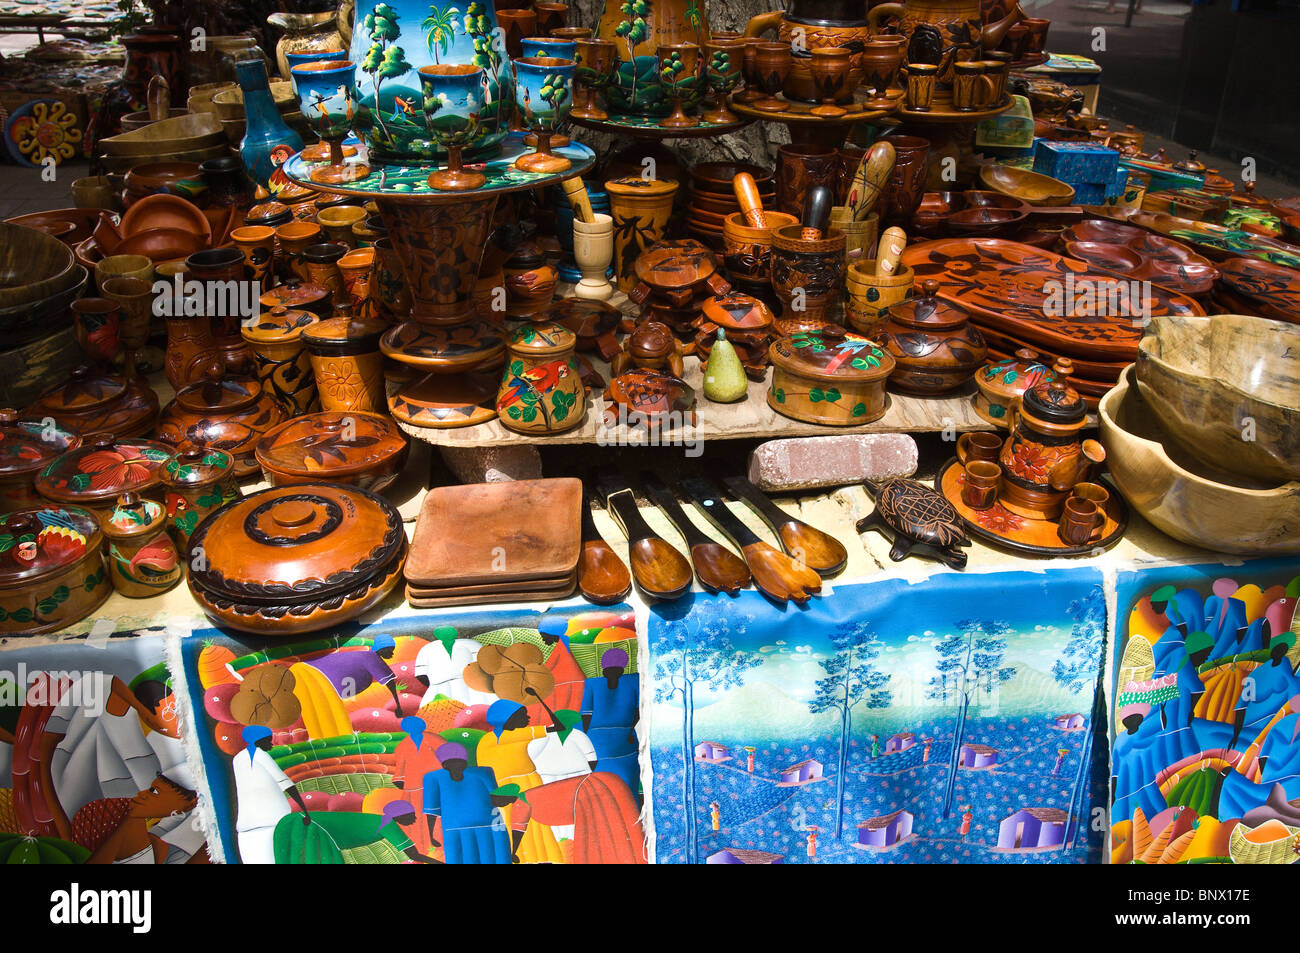 Souvenirs in willemstad Markt, Willemstad, Curacao, niederländische antillen karibik Stockfoto